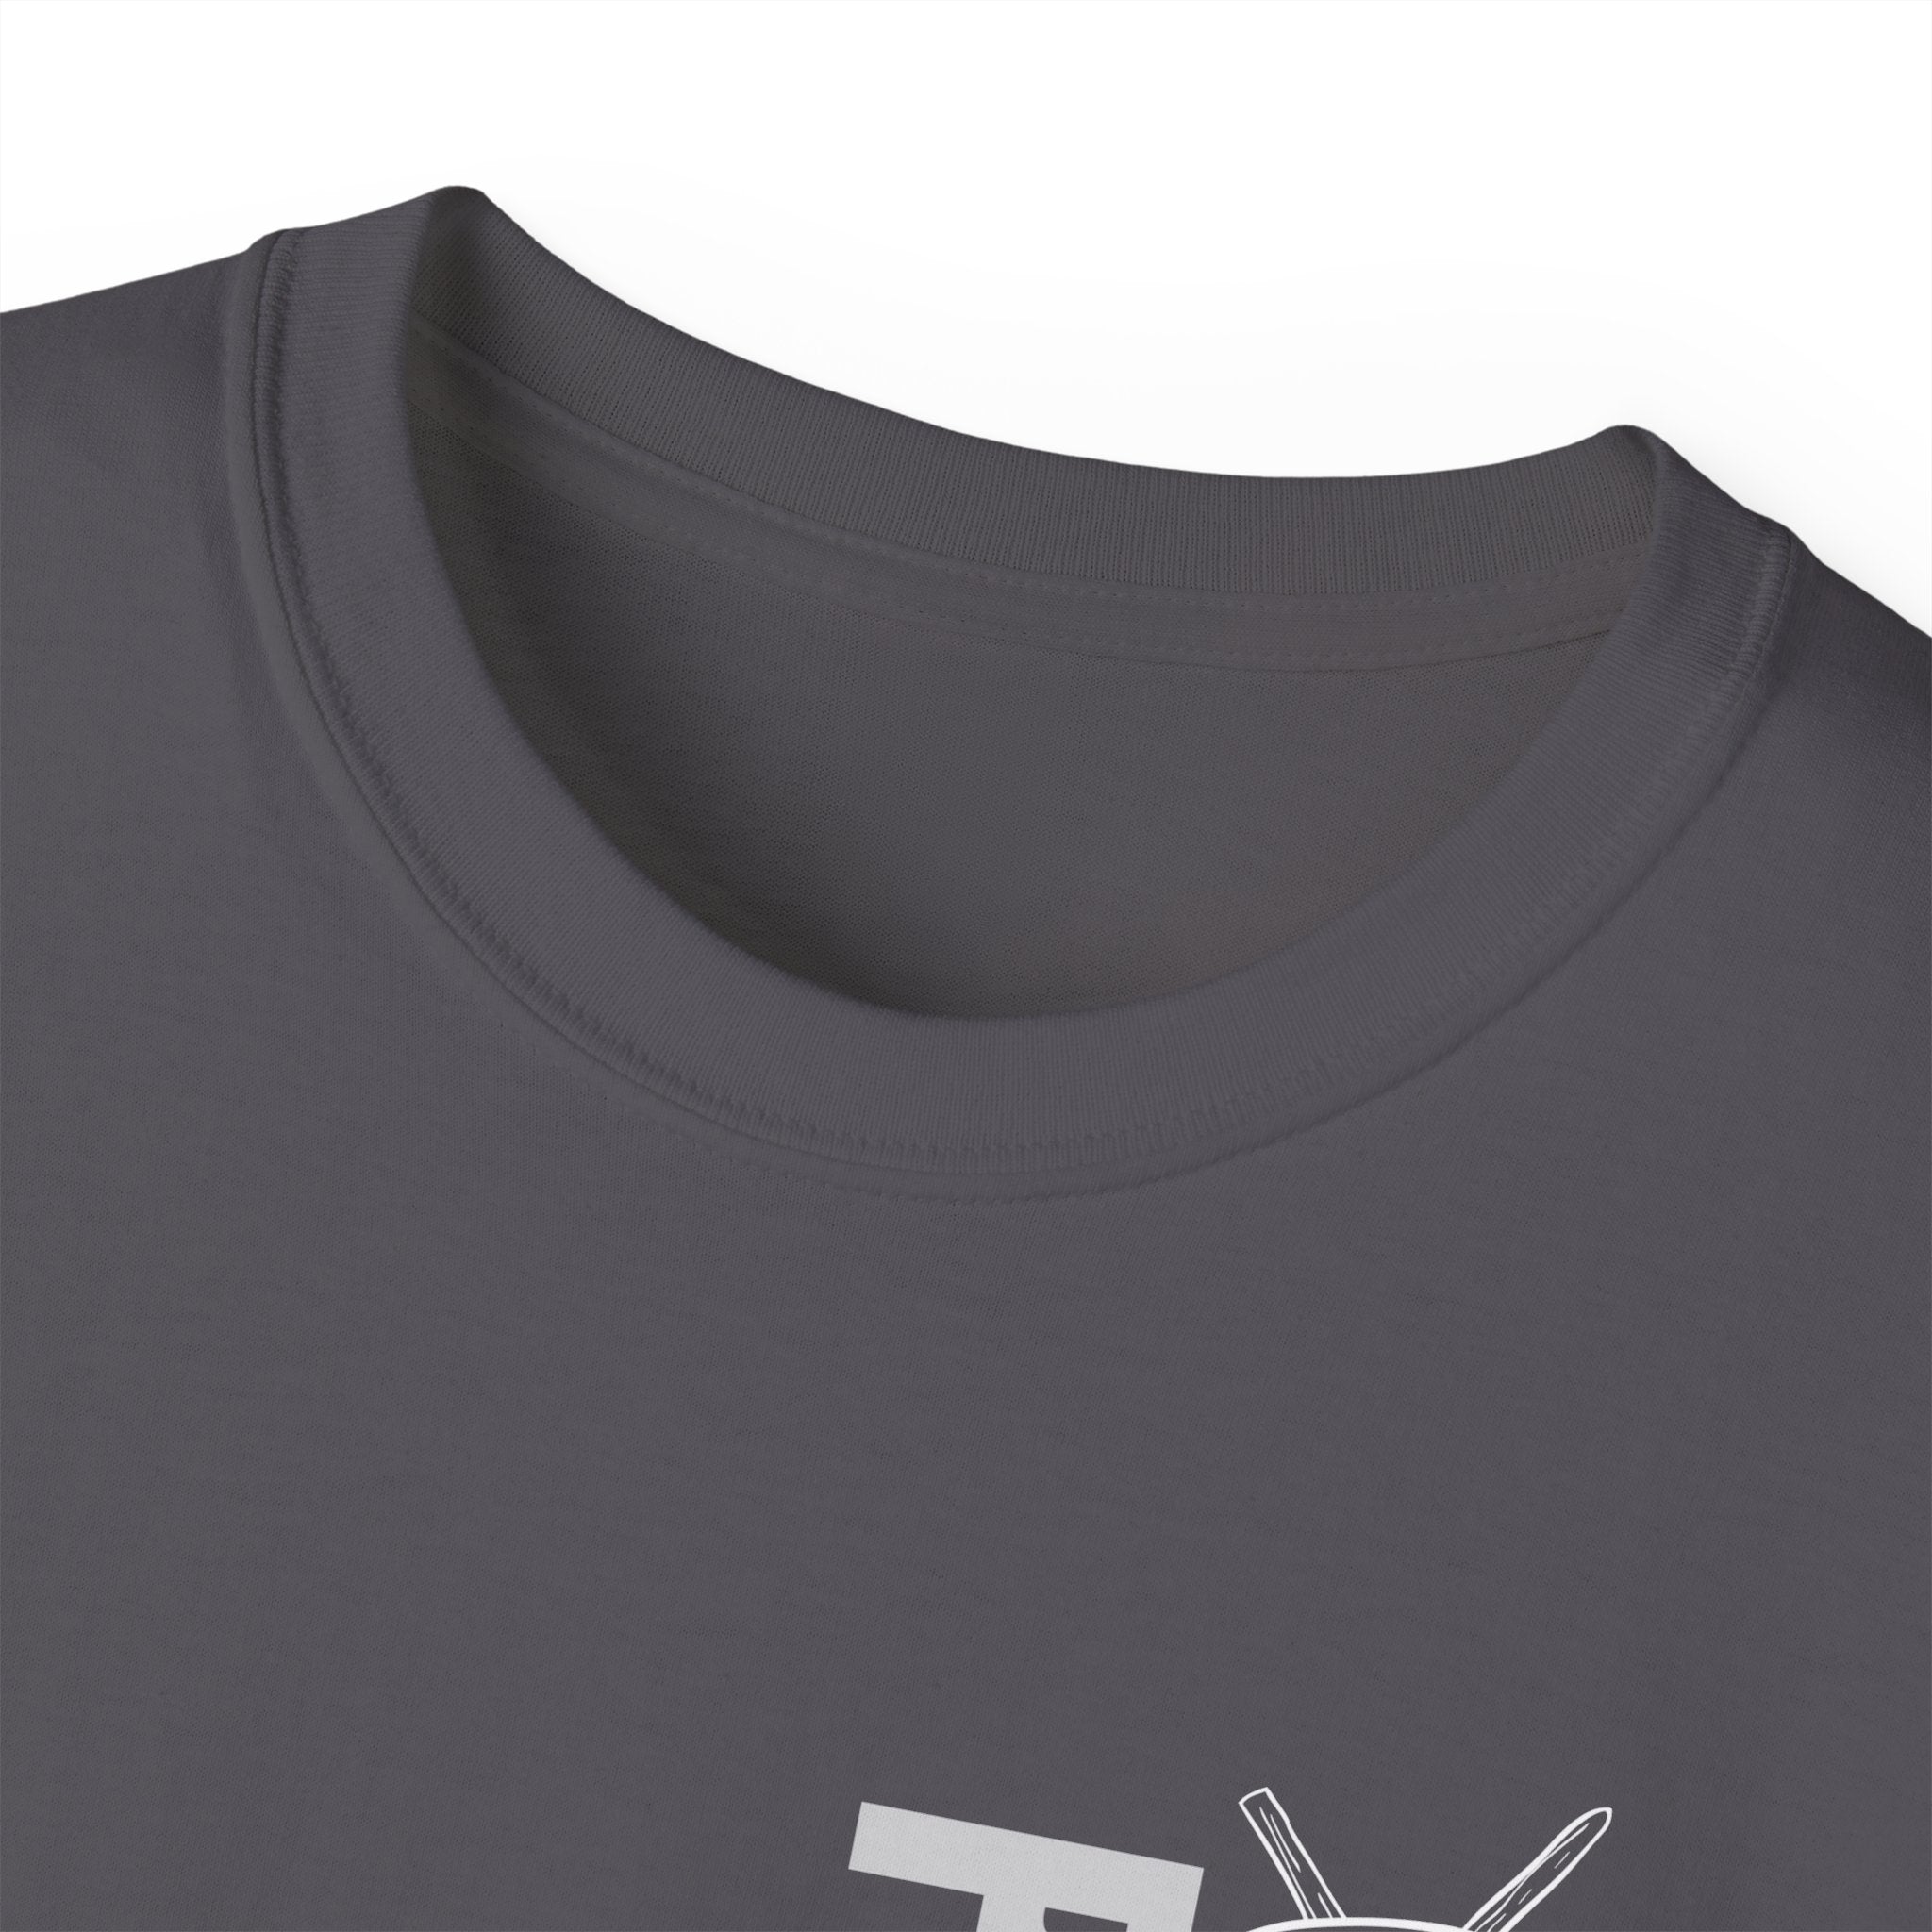 GPAA Prospector T-Shirt - S - 5XL